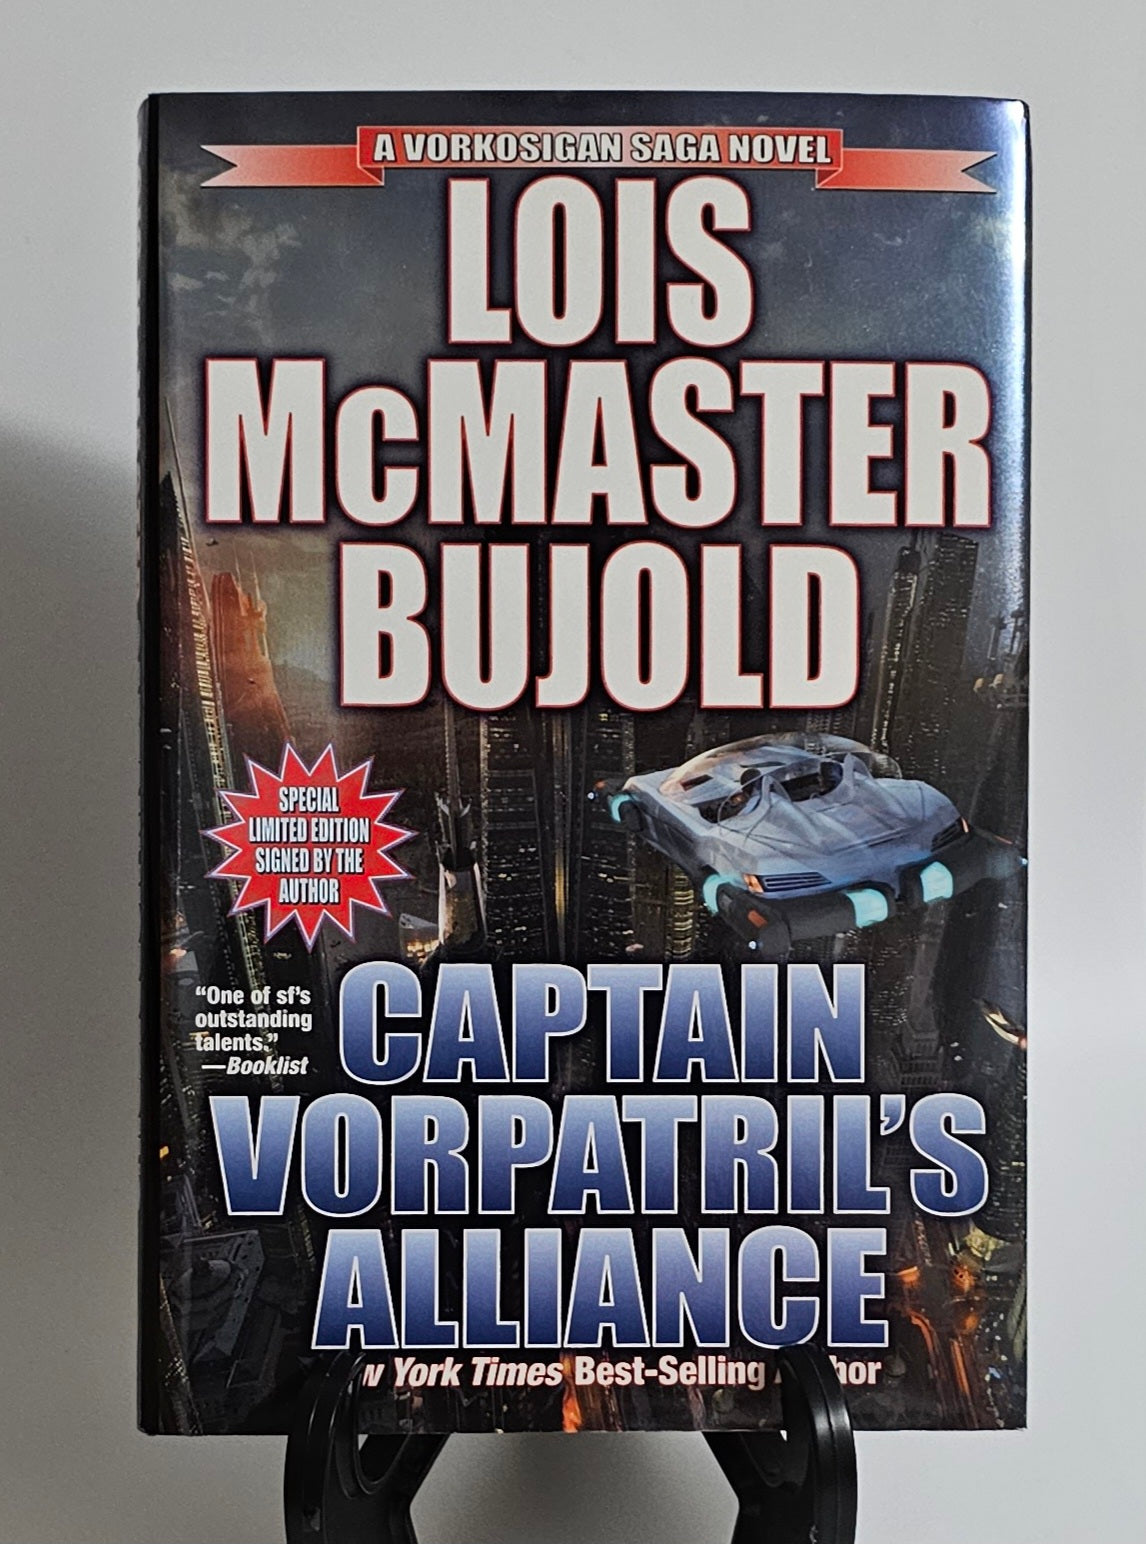 Captain Vorpatril's Alliance By: Lois McMaster Bujold ** Signed ** (Vorkosigan Saga (Chronological Order) #14)